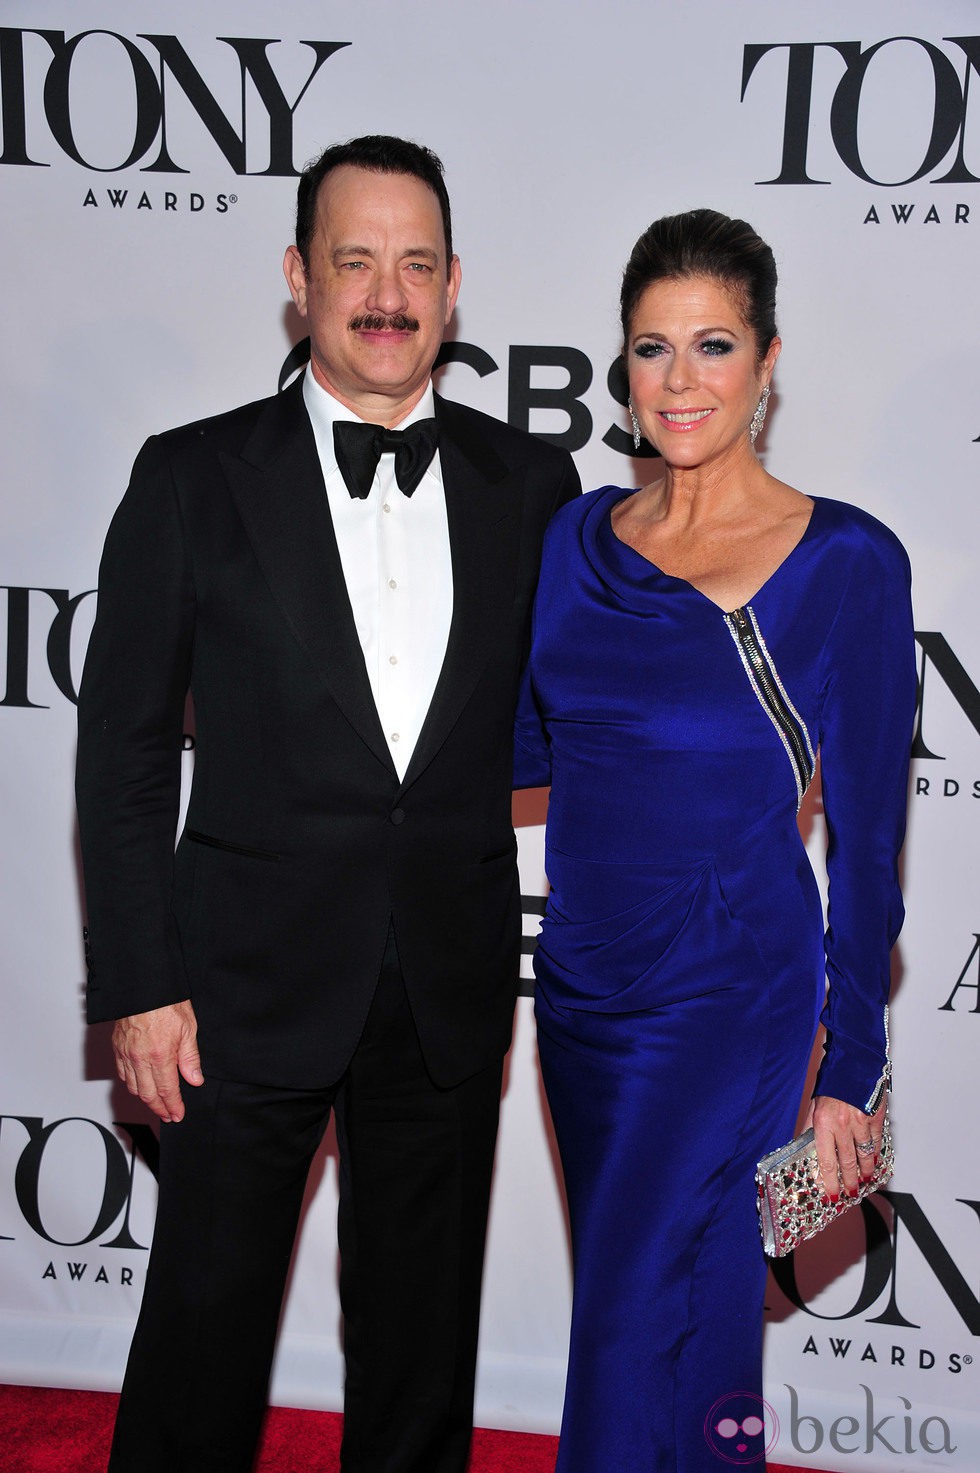 Tom Hanks y Rita Wilson en la gala de los premios Tony 2013